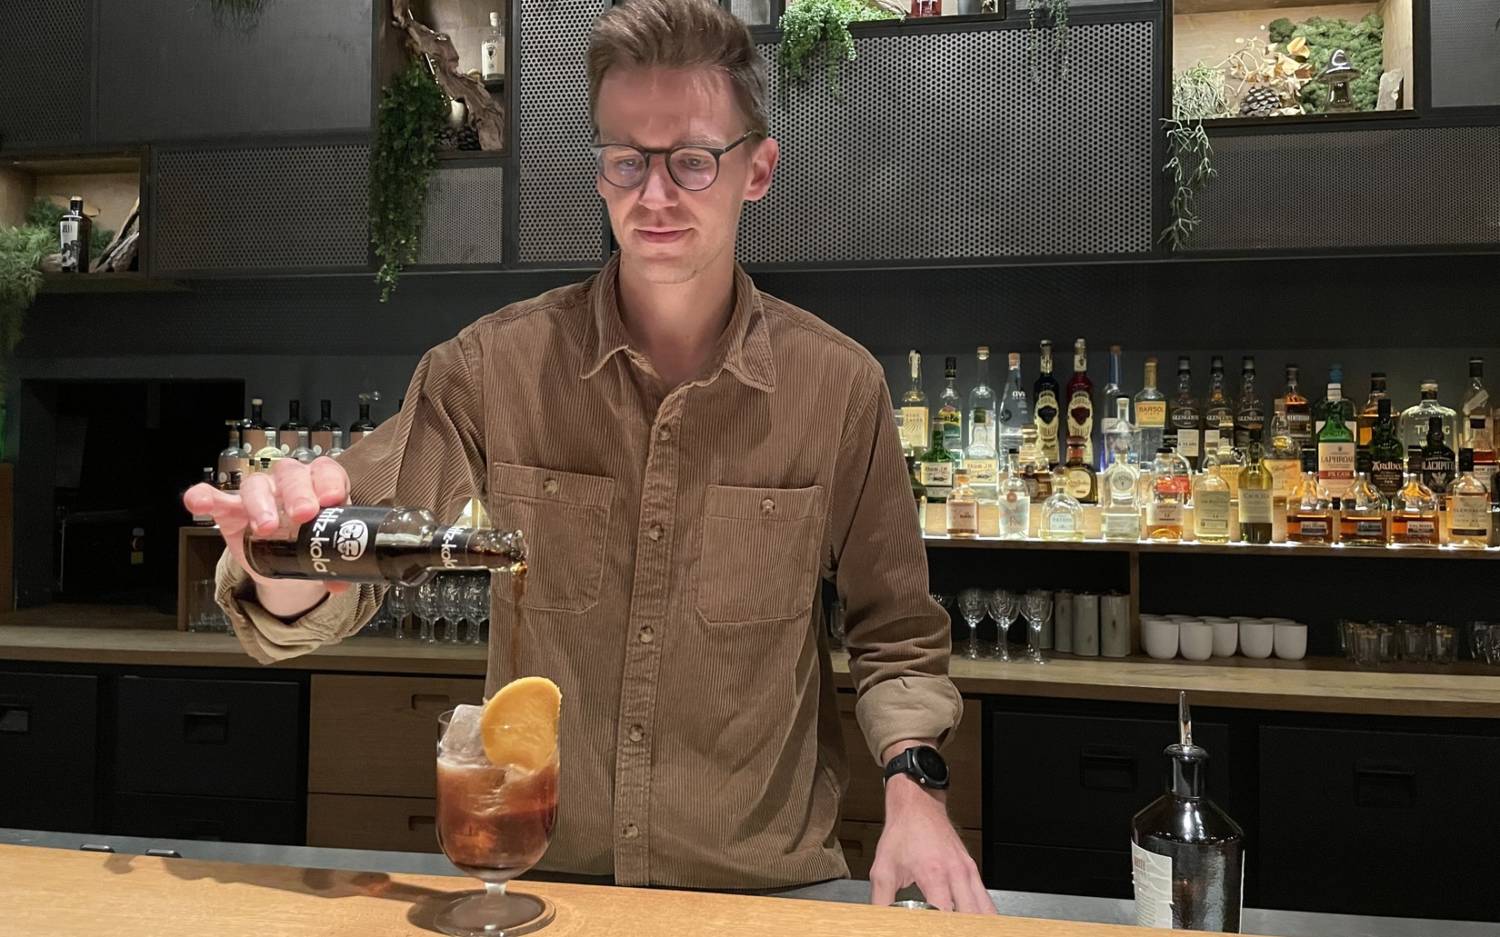 Drilling-Barchef Laurenz Ortlieb mixt gern fritz-kola in seine Cocktail-Kreationen / © Karoline Gebhardt